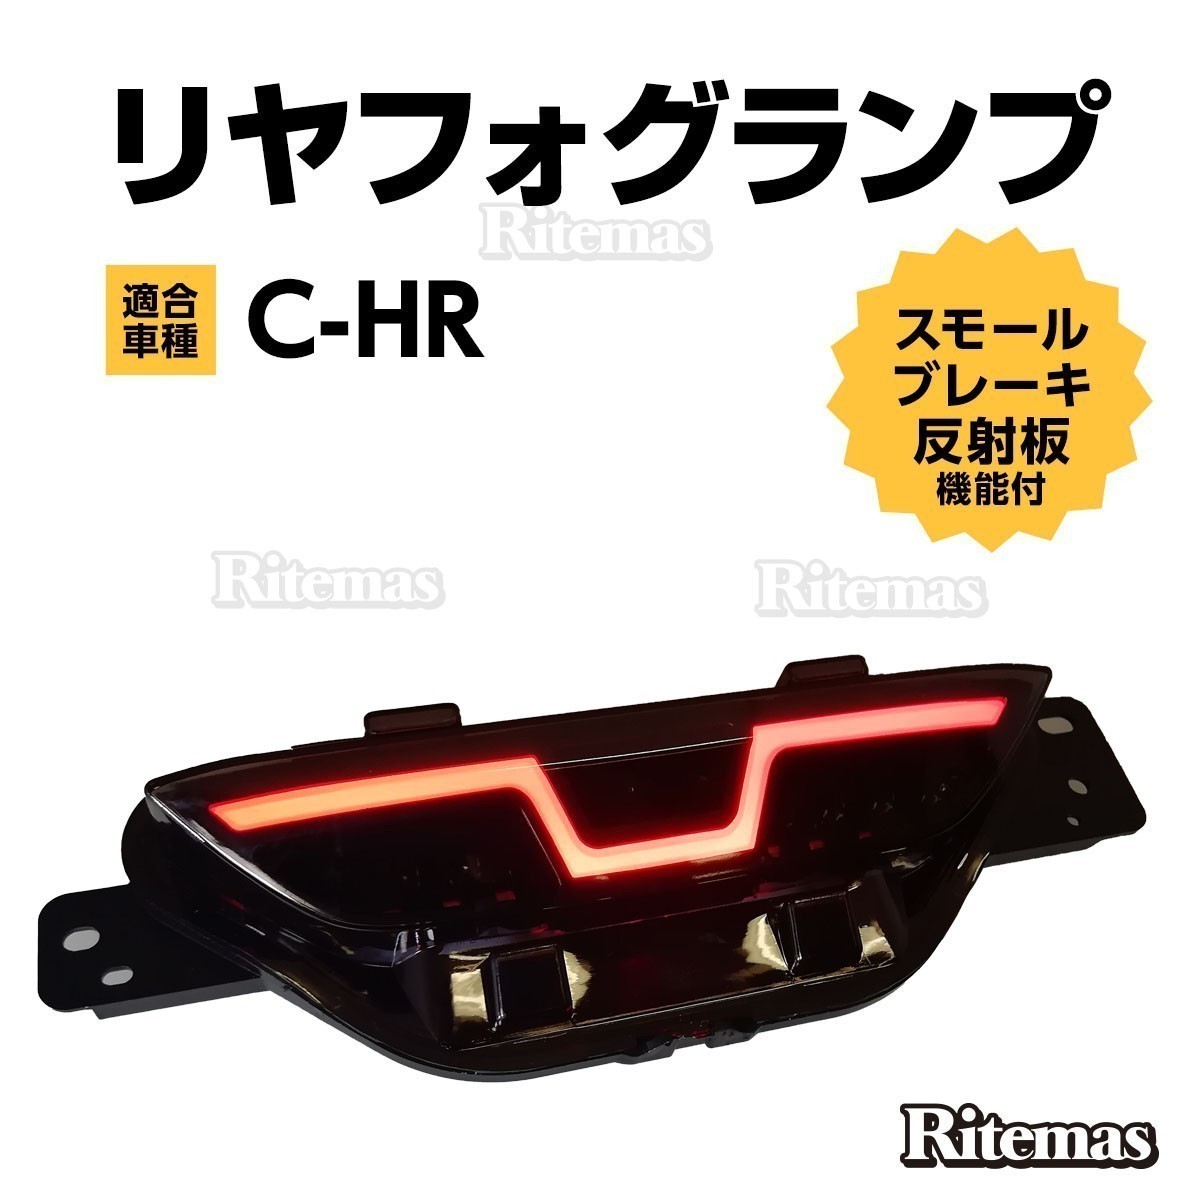 C-HR CHR ZYX10 NGX50 リアフォグランプ リヤフォグ バックランプ LEDランプ ブレーキランプ テール ブレーキ LED パーツ カスタム_RFL-CHR-002